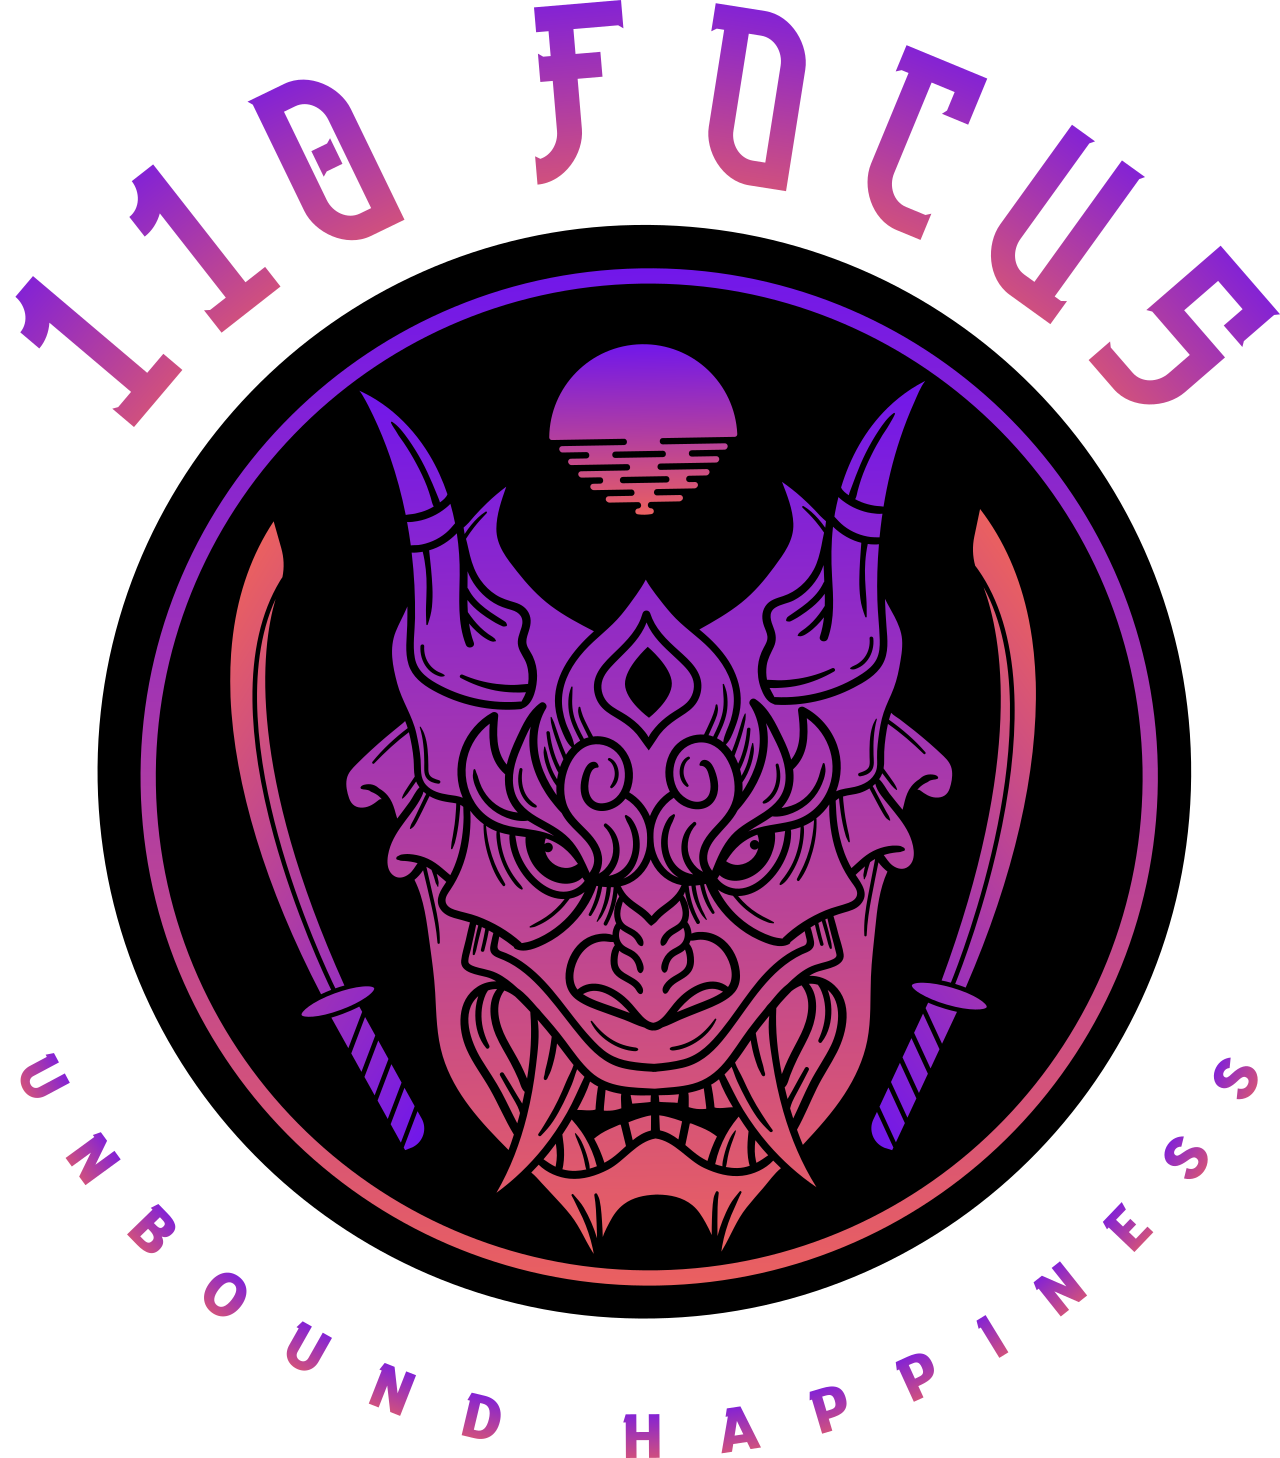 110 FOCUS's logo